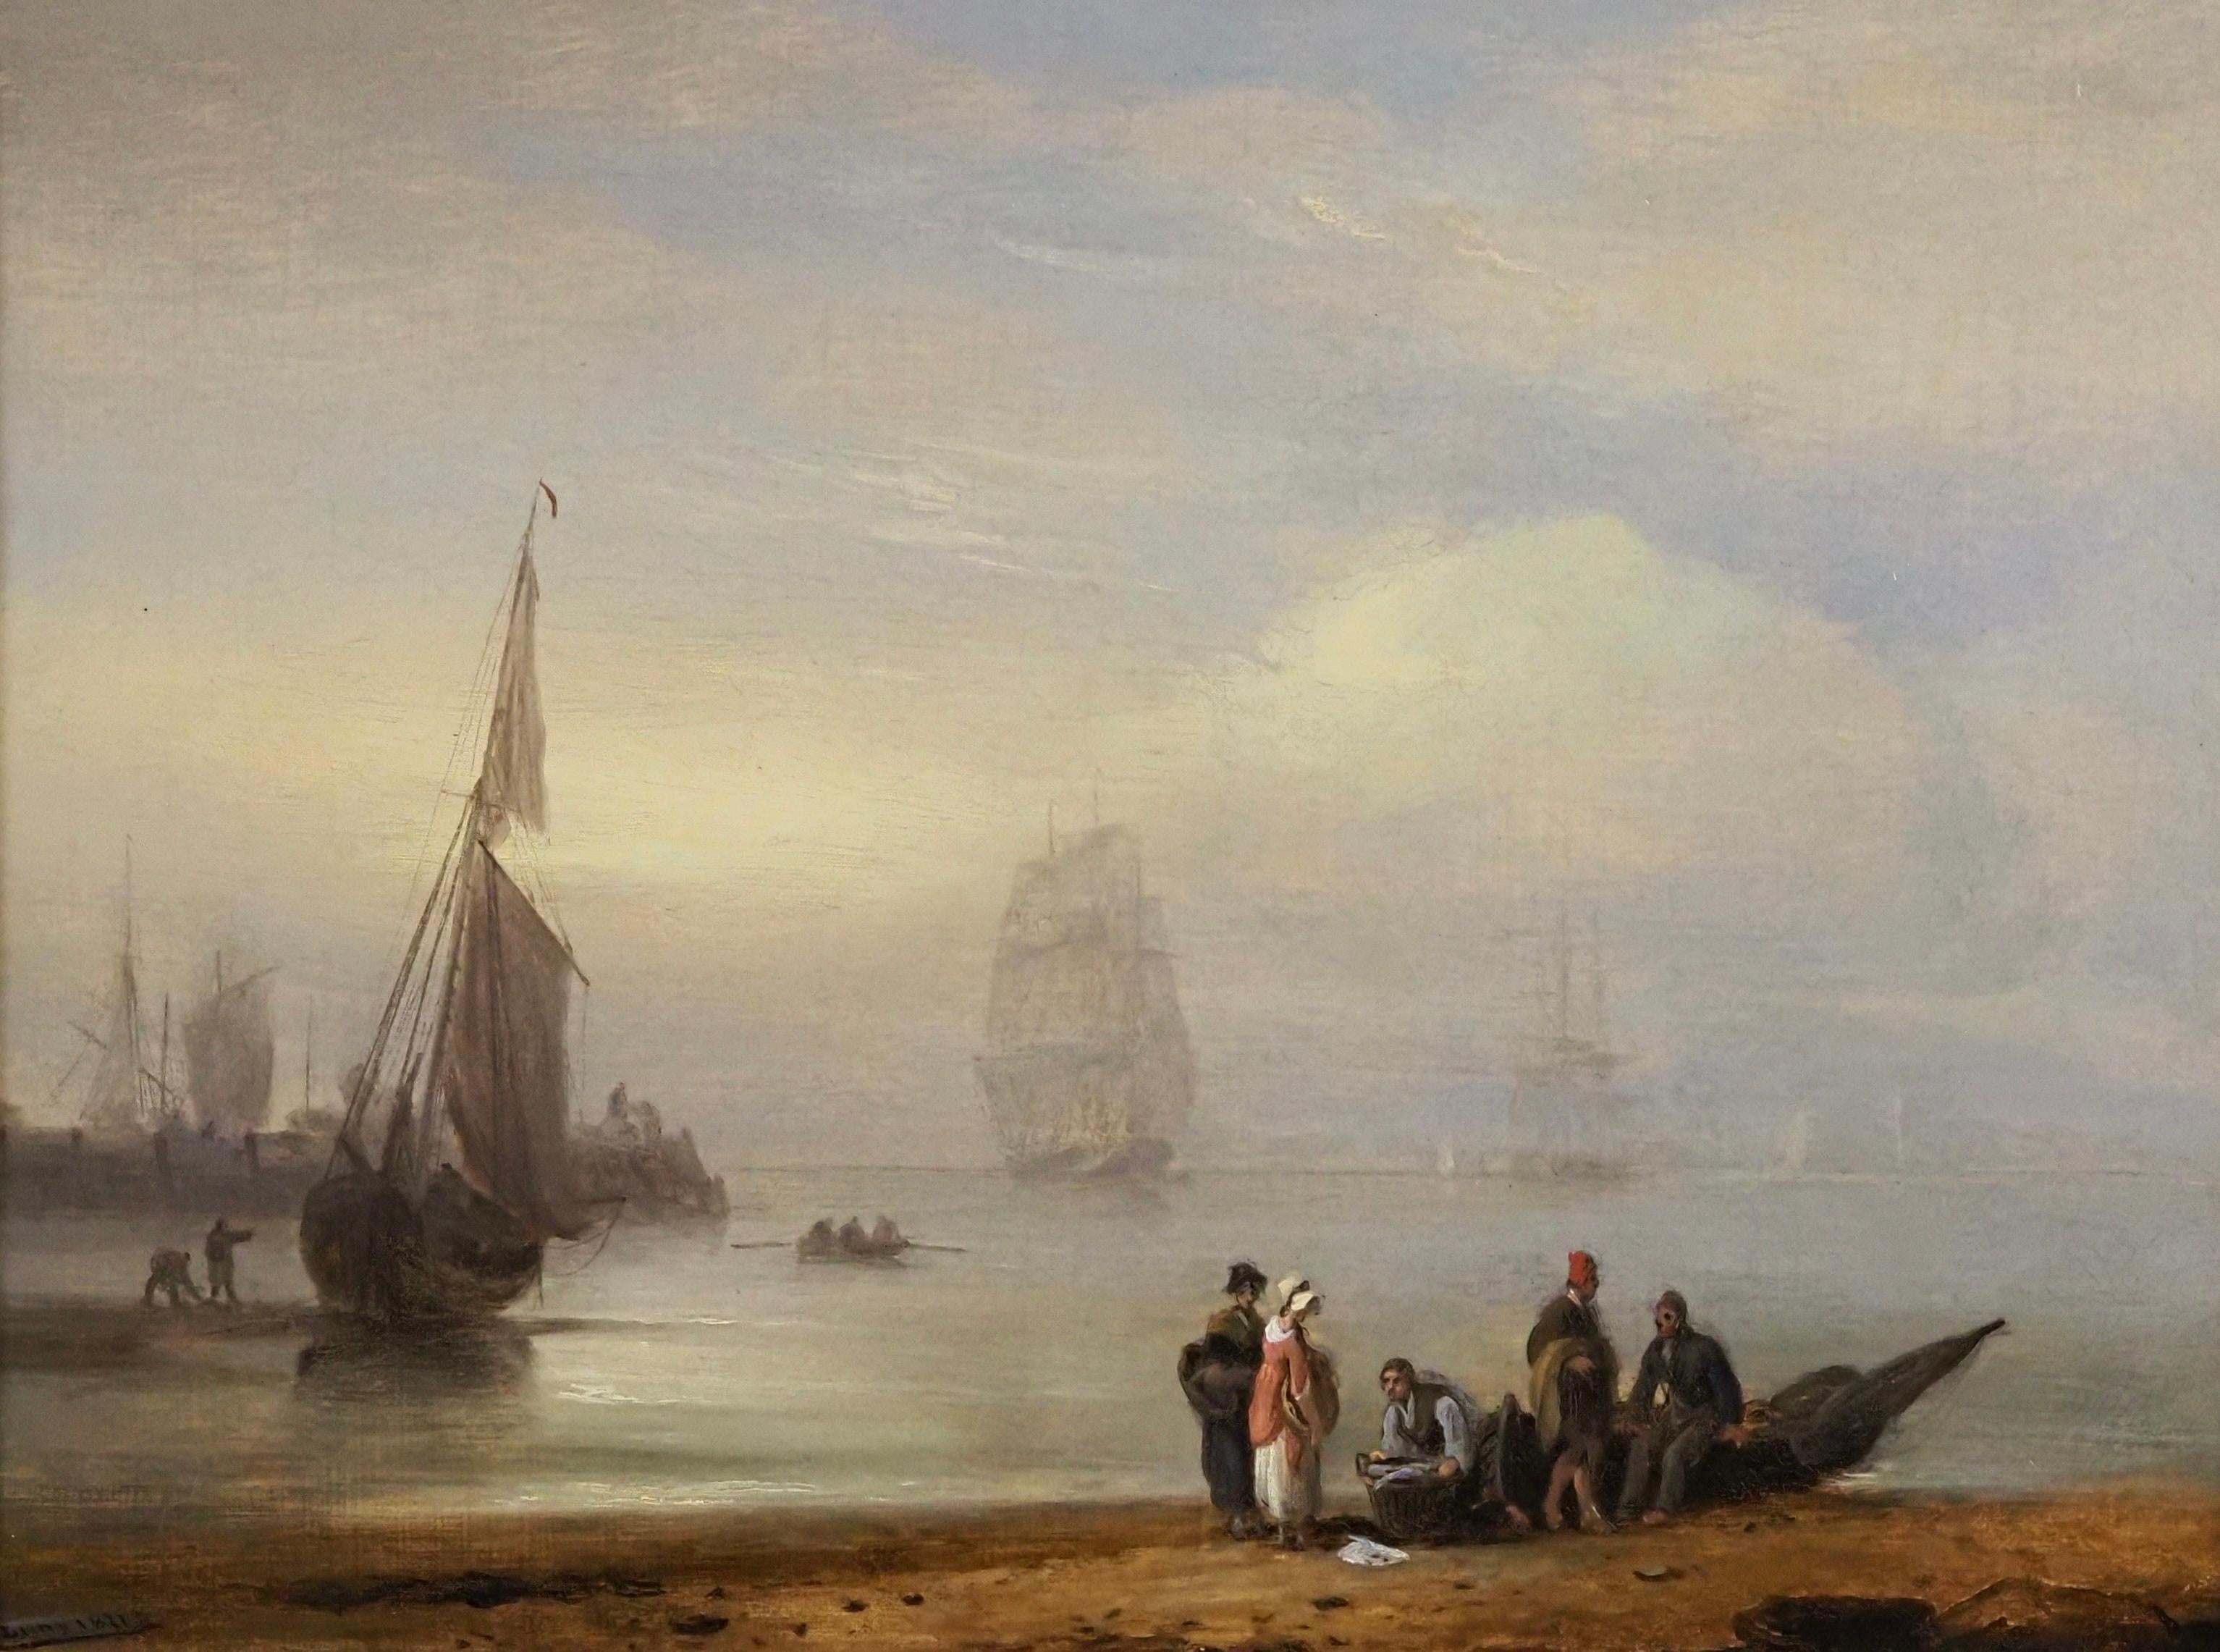 Un récipient de pêche au reposant dans le port - Painting de Thomas Luny